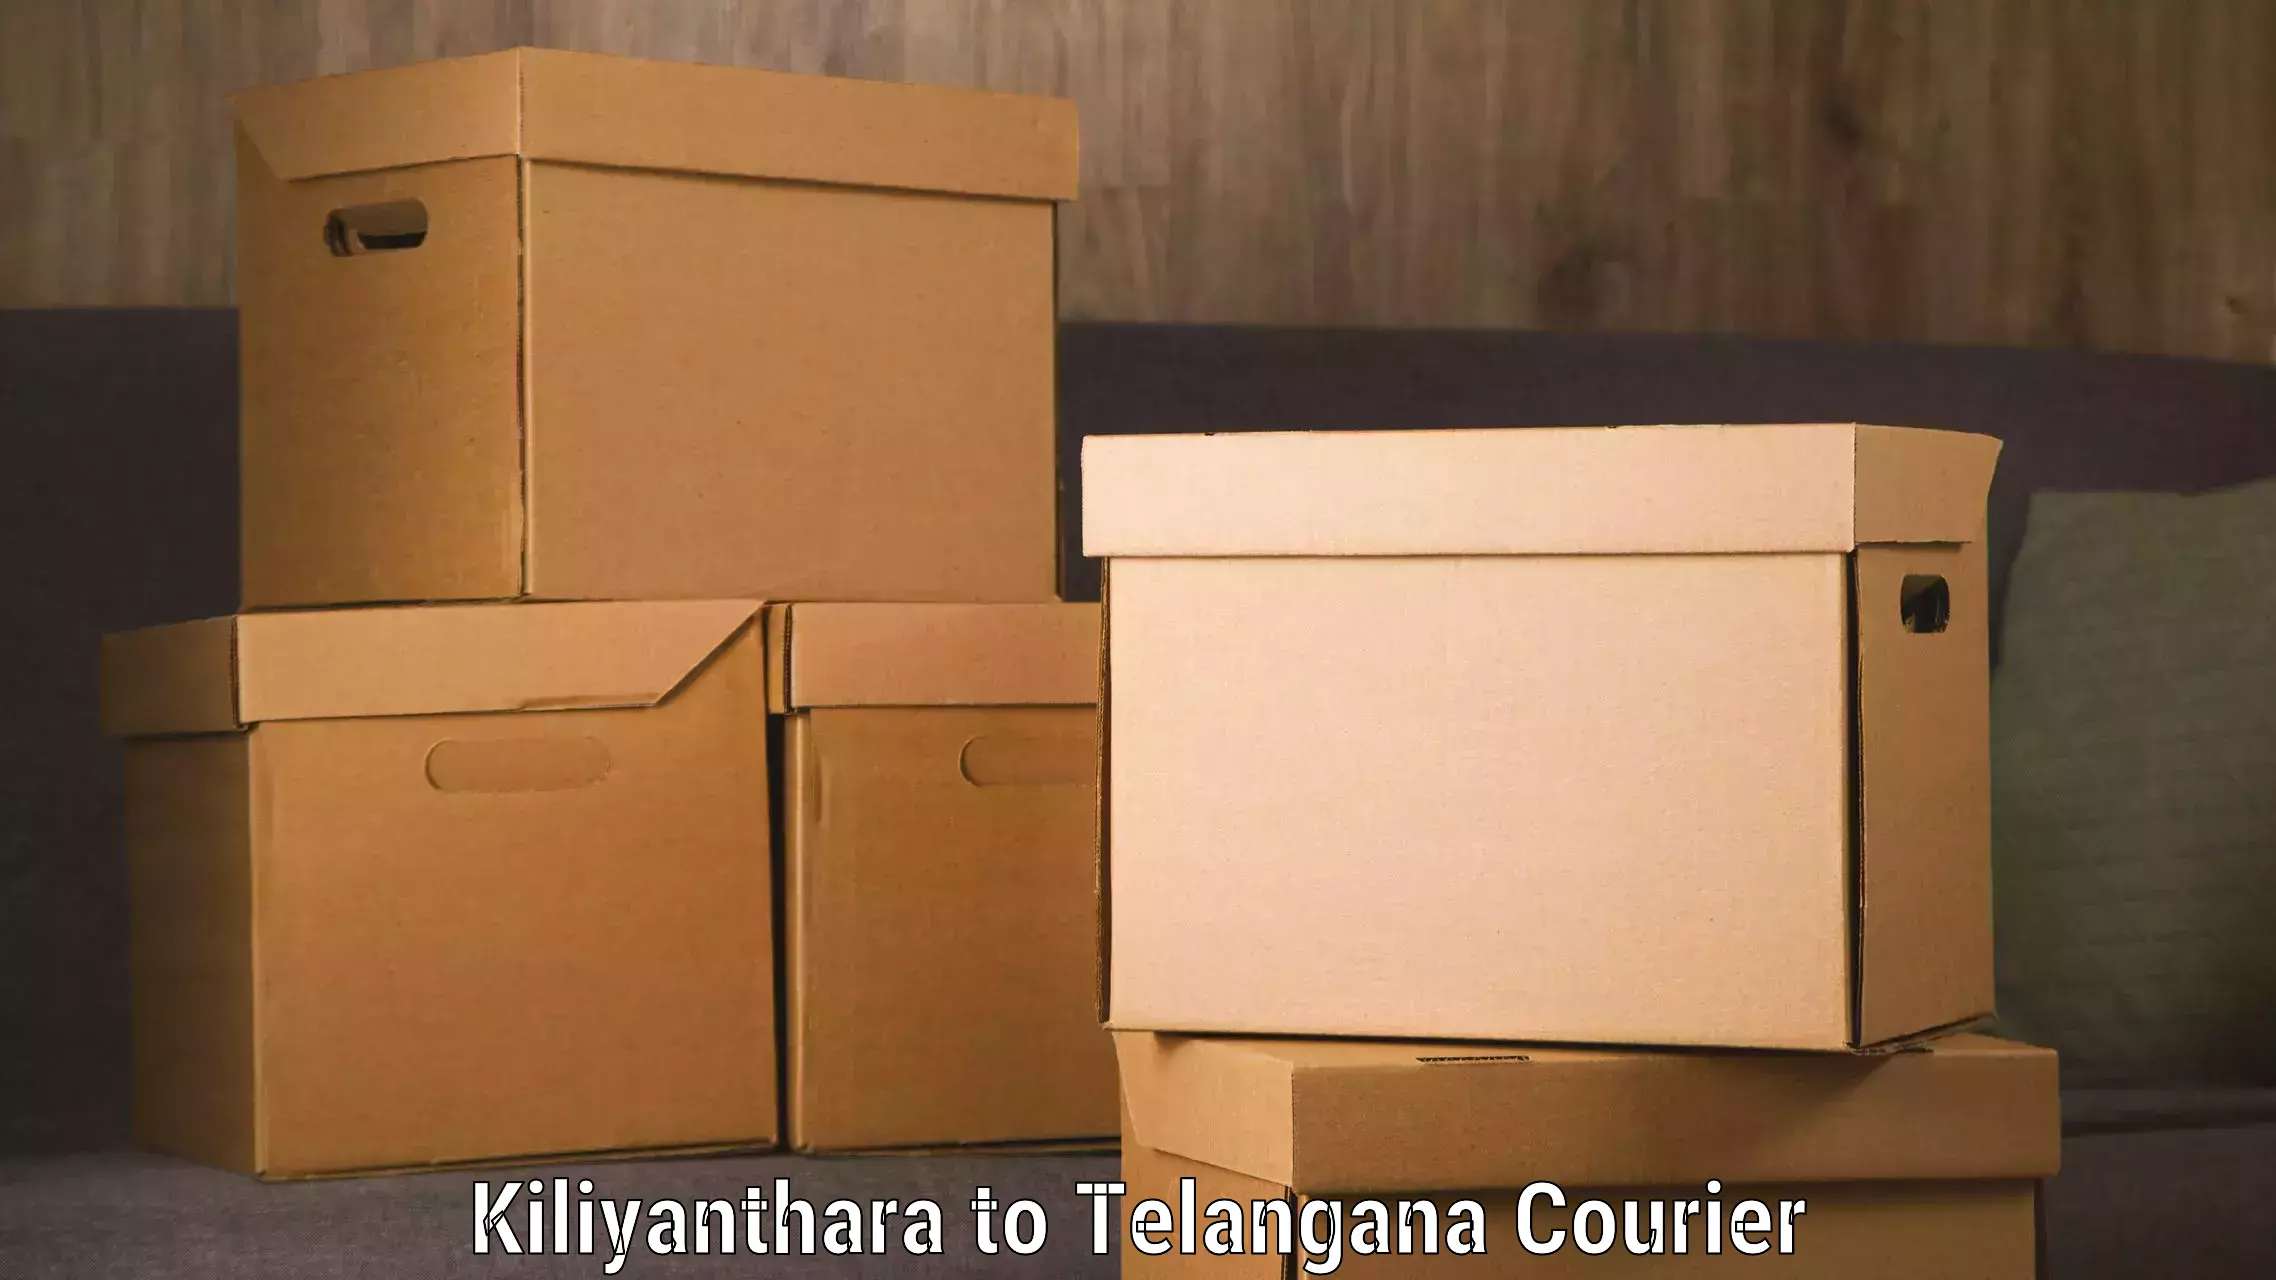 Same-day delivery solutions Kiliyanthara to Telangana